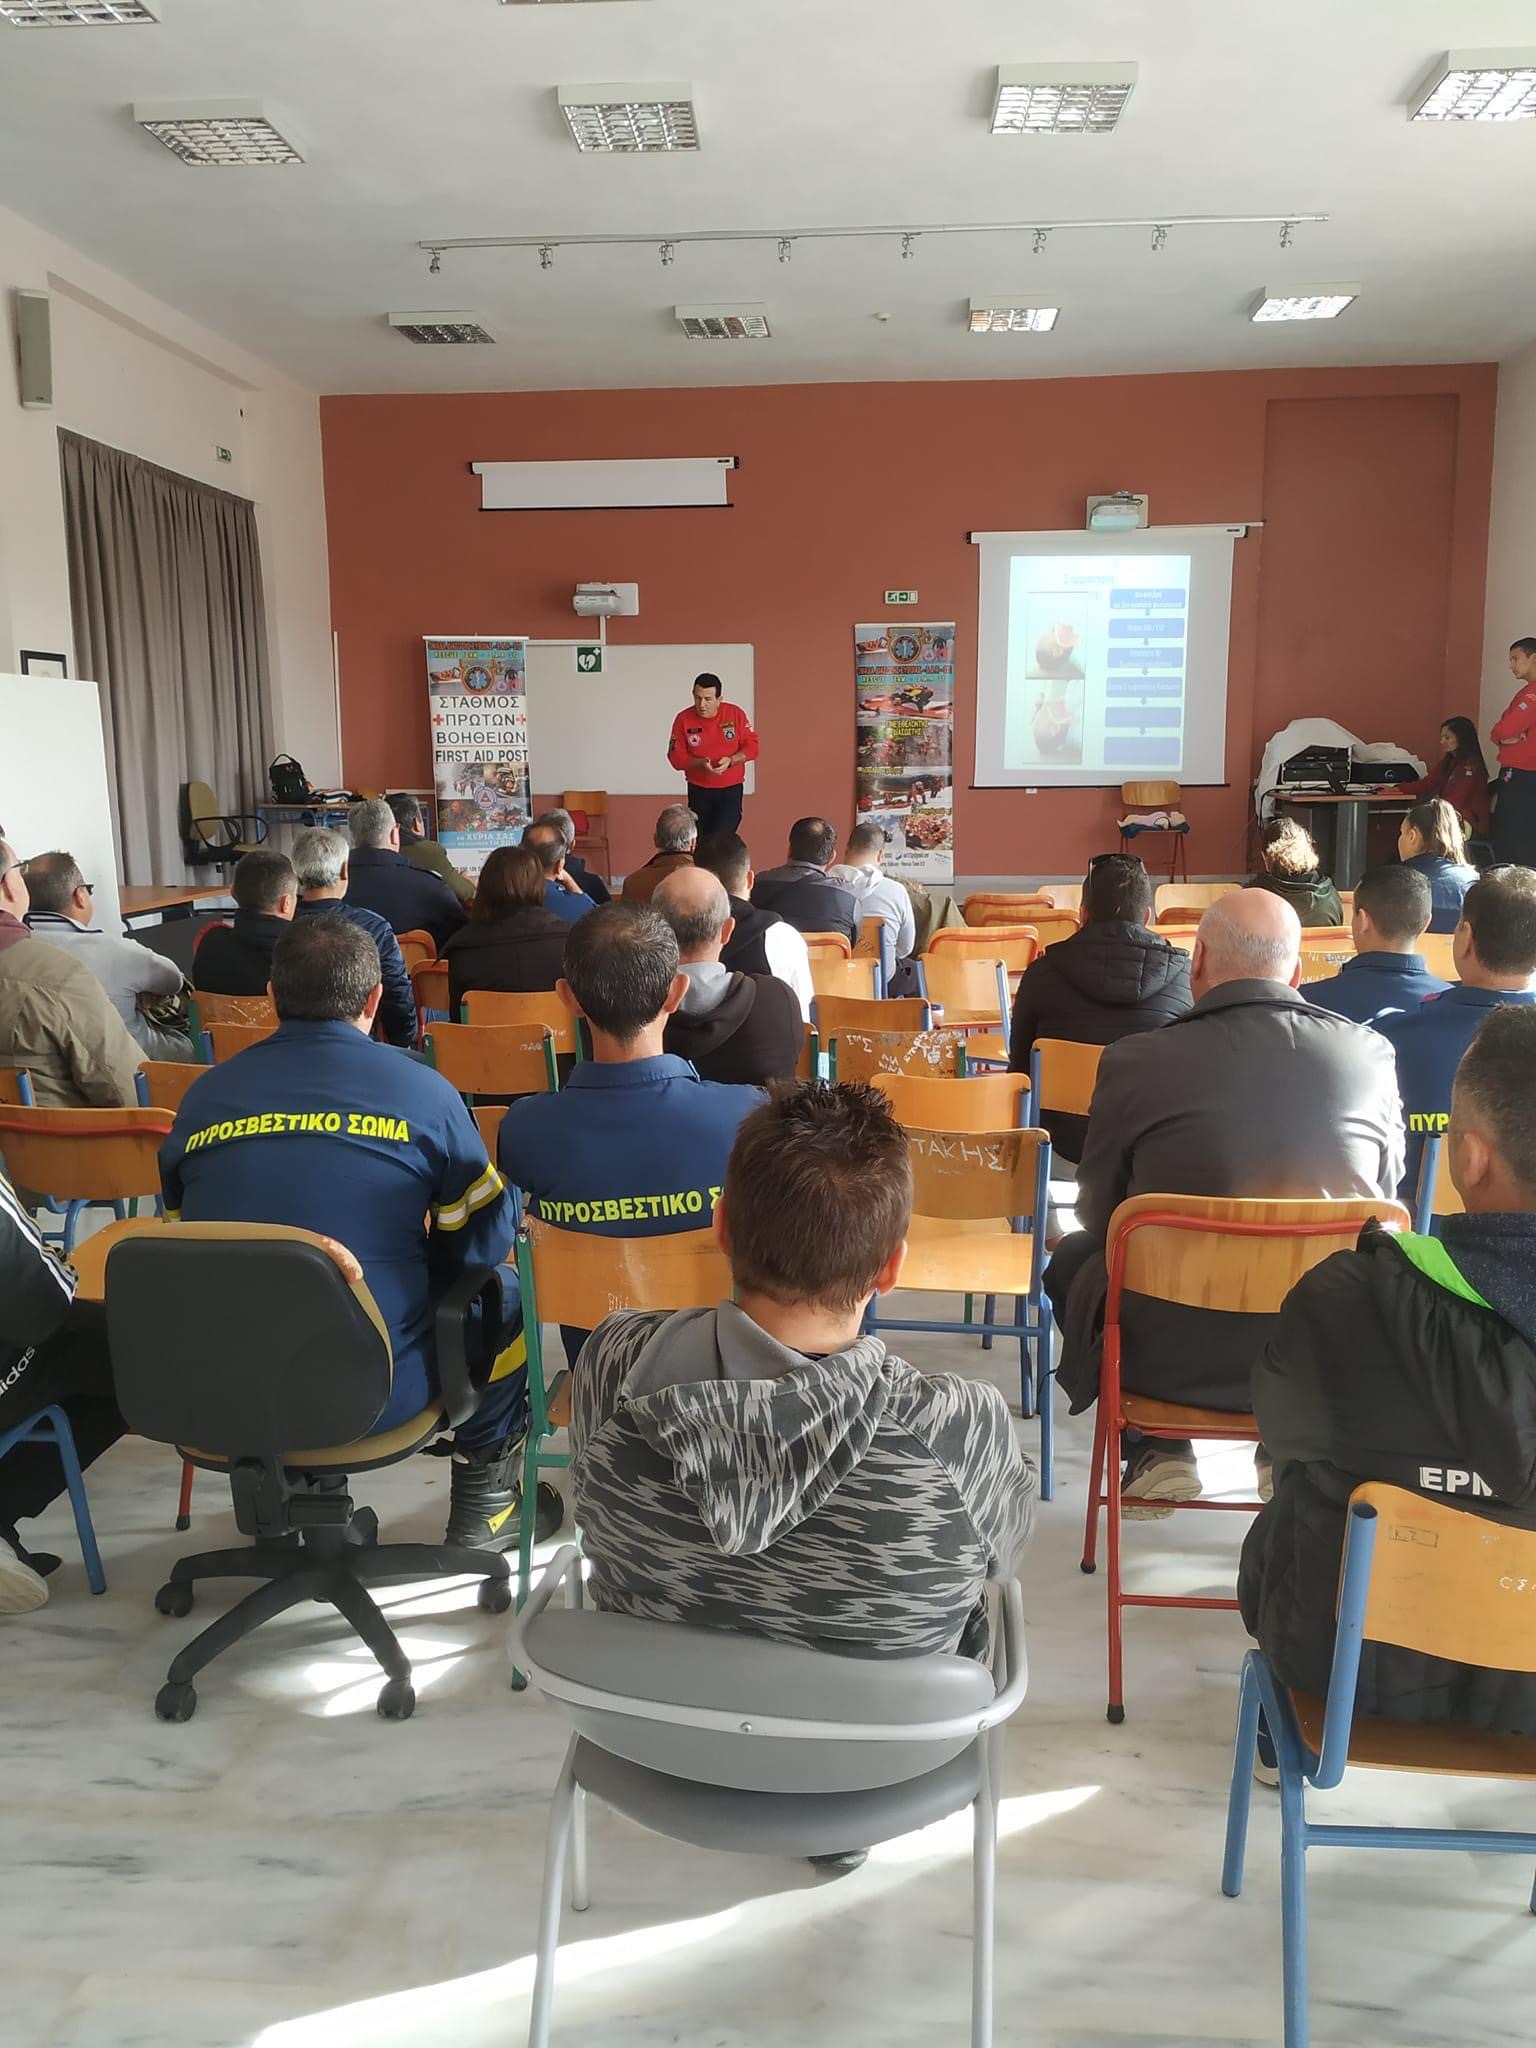 Εύβοια: Και στο Μαντούδι για εκπαίδευση η ομάδα διάσωσης sar 312 – Τα συγχαρητήρια του αντιδήμαρχου (pics)